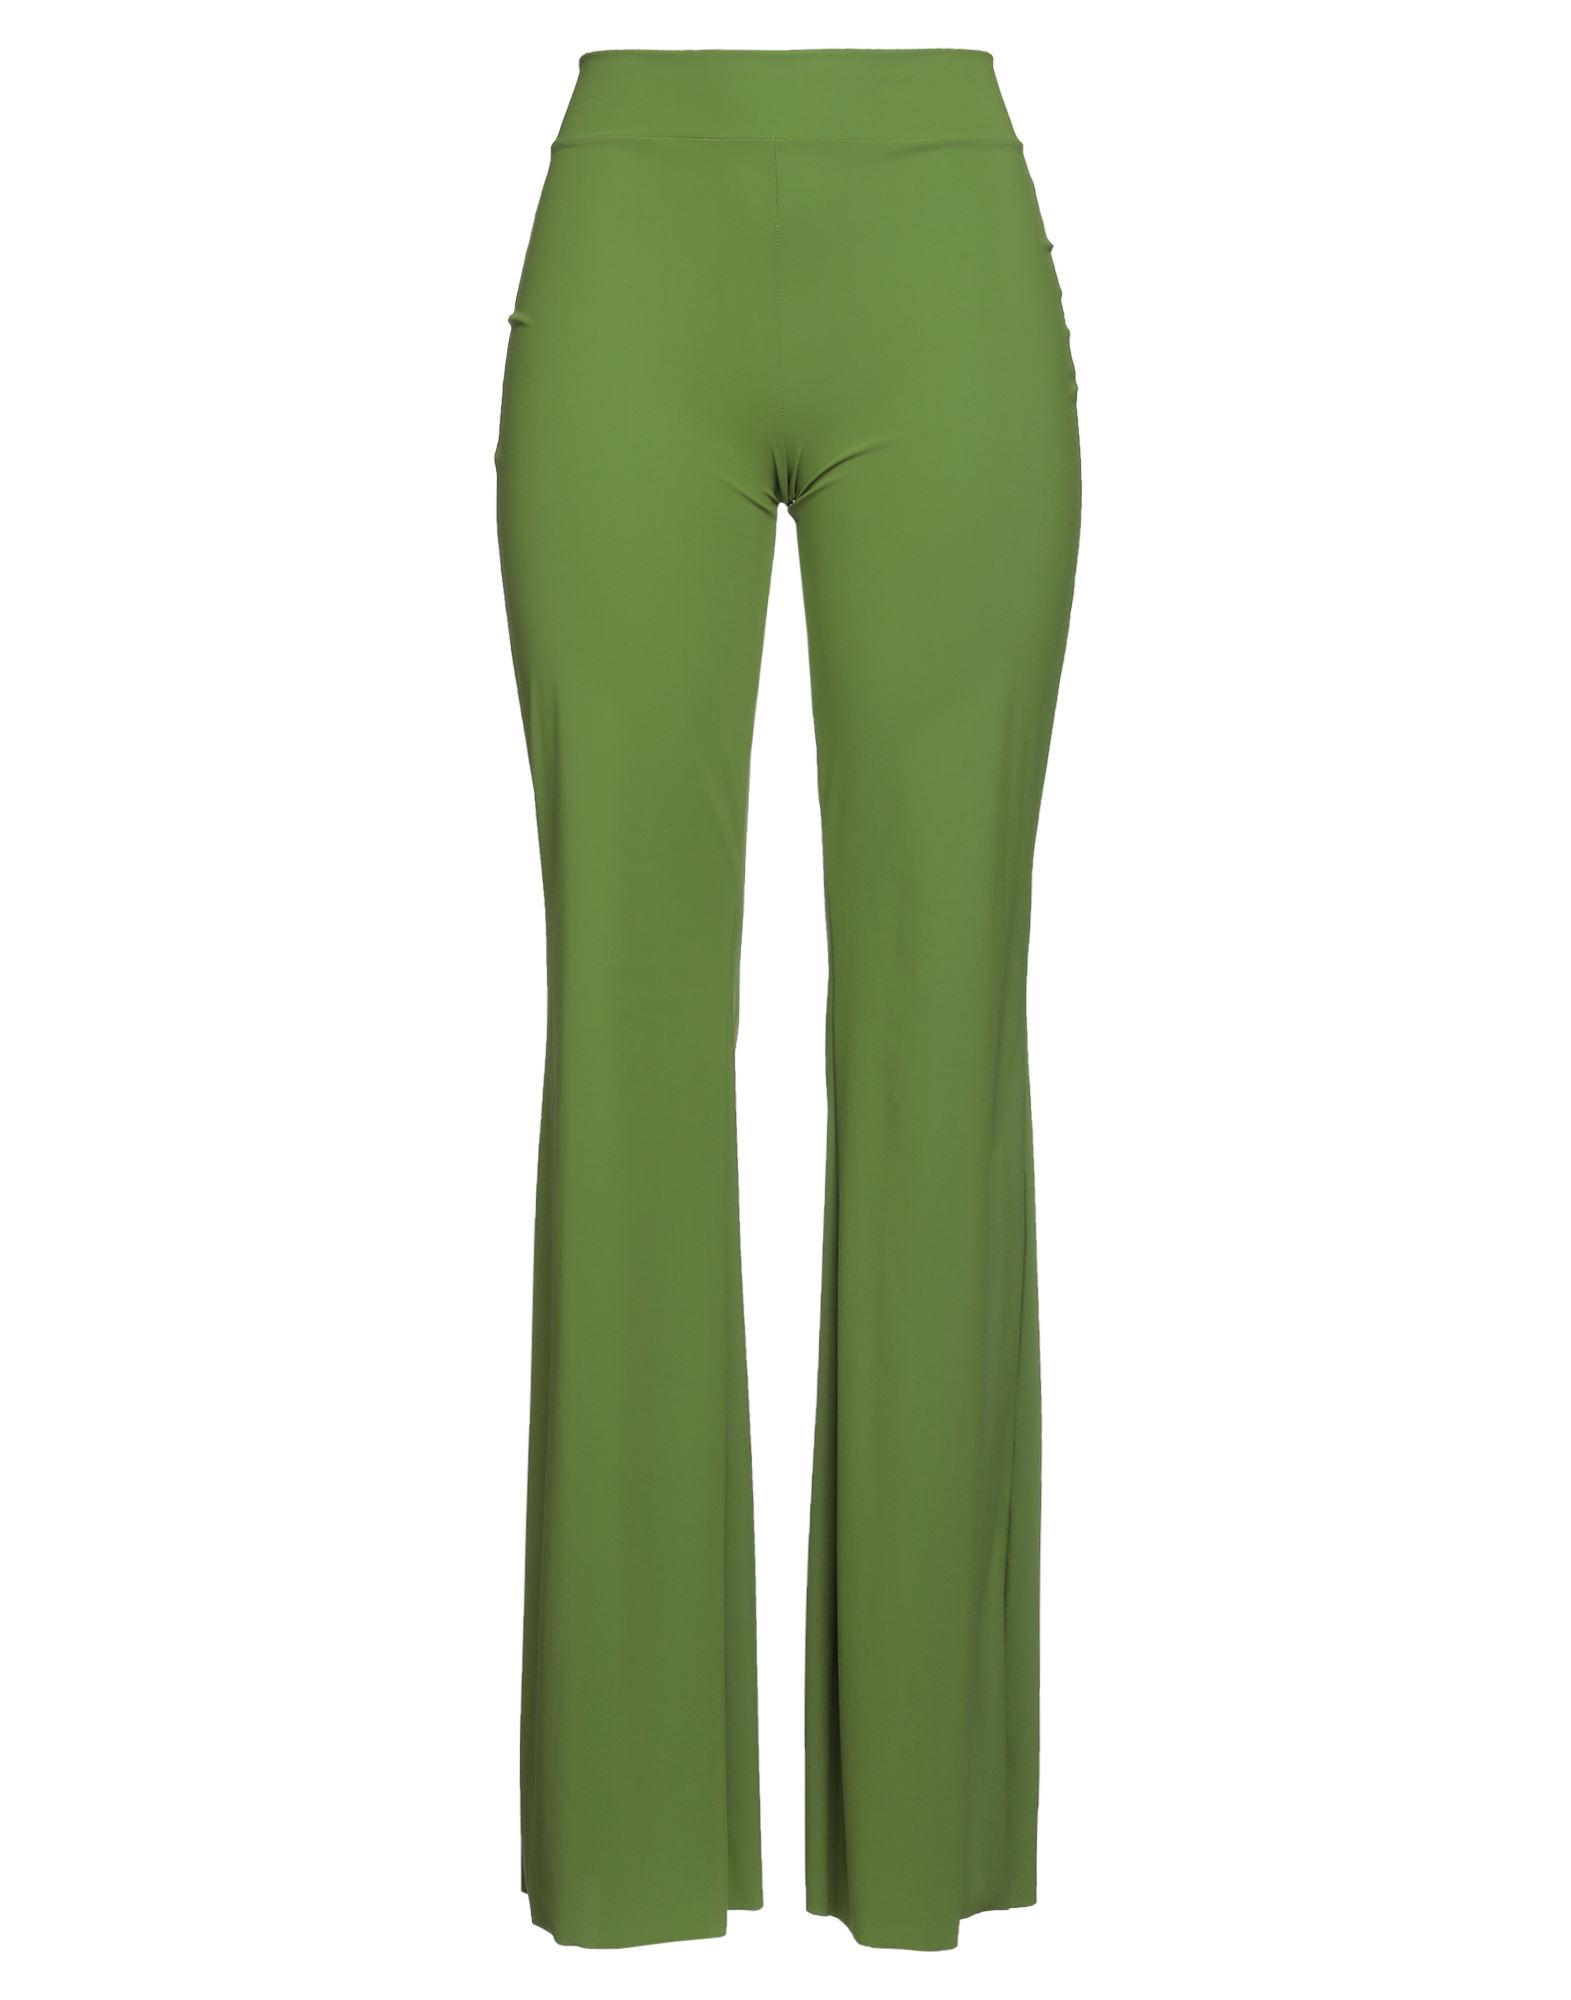 Chiara Boni La Petite Robe Pants In Green